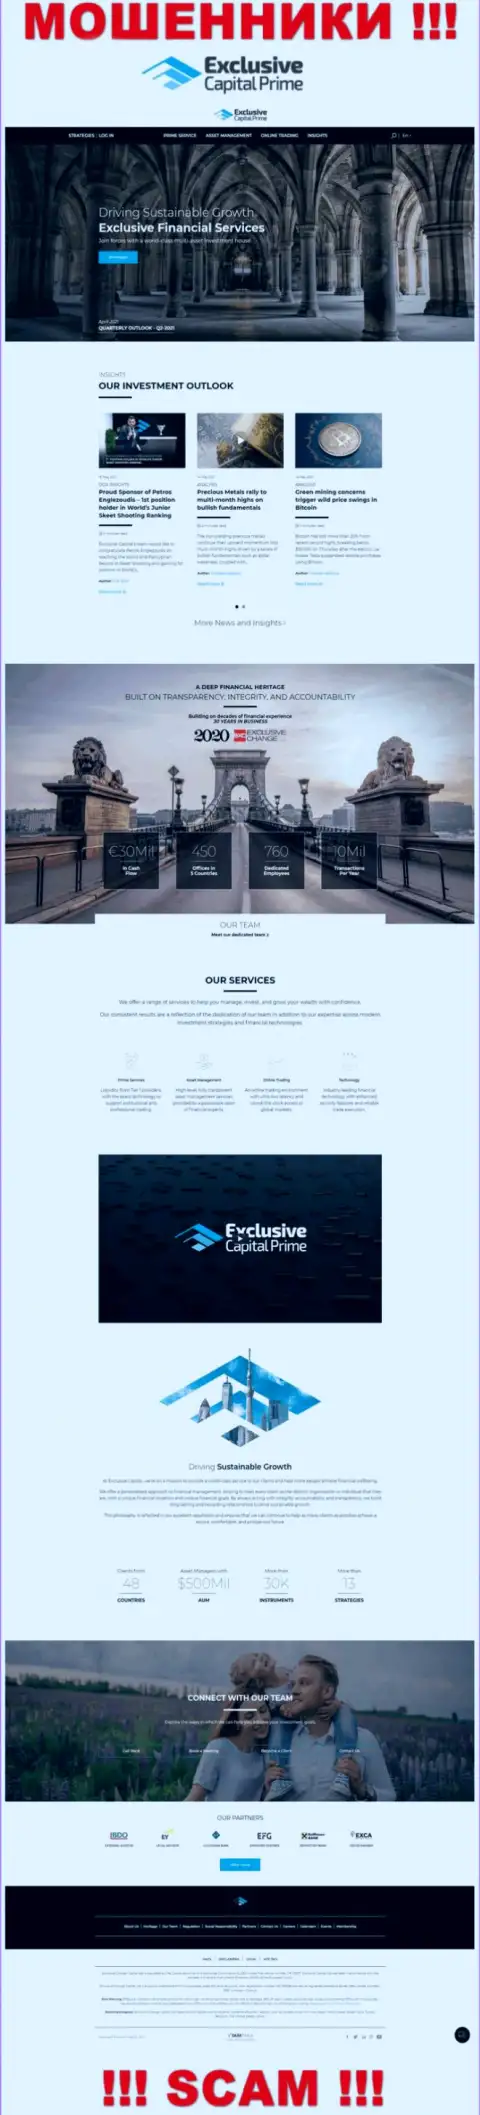 Скрин официального информационного ресурса Exclusive Capital - ExclusiveCapital Com